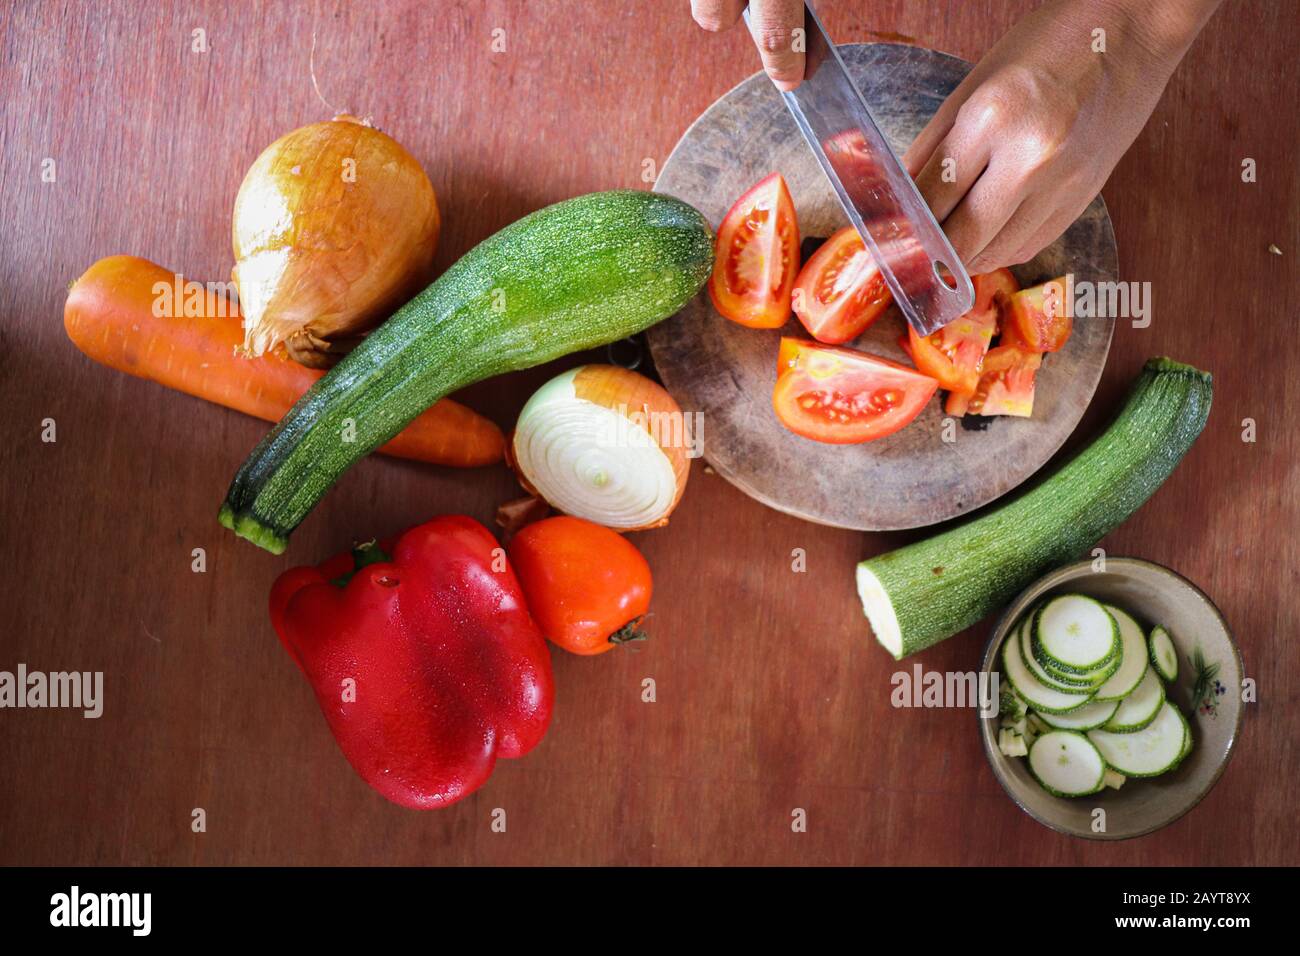 Vida quieta mostrando el concepto de gastronomía, cocina, cocina, dieta orgánica limpia y estilo de vida vegano Foto de stock